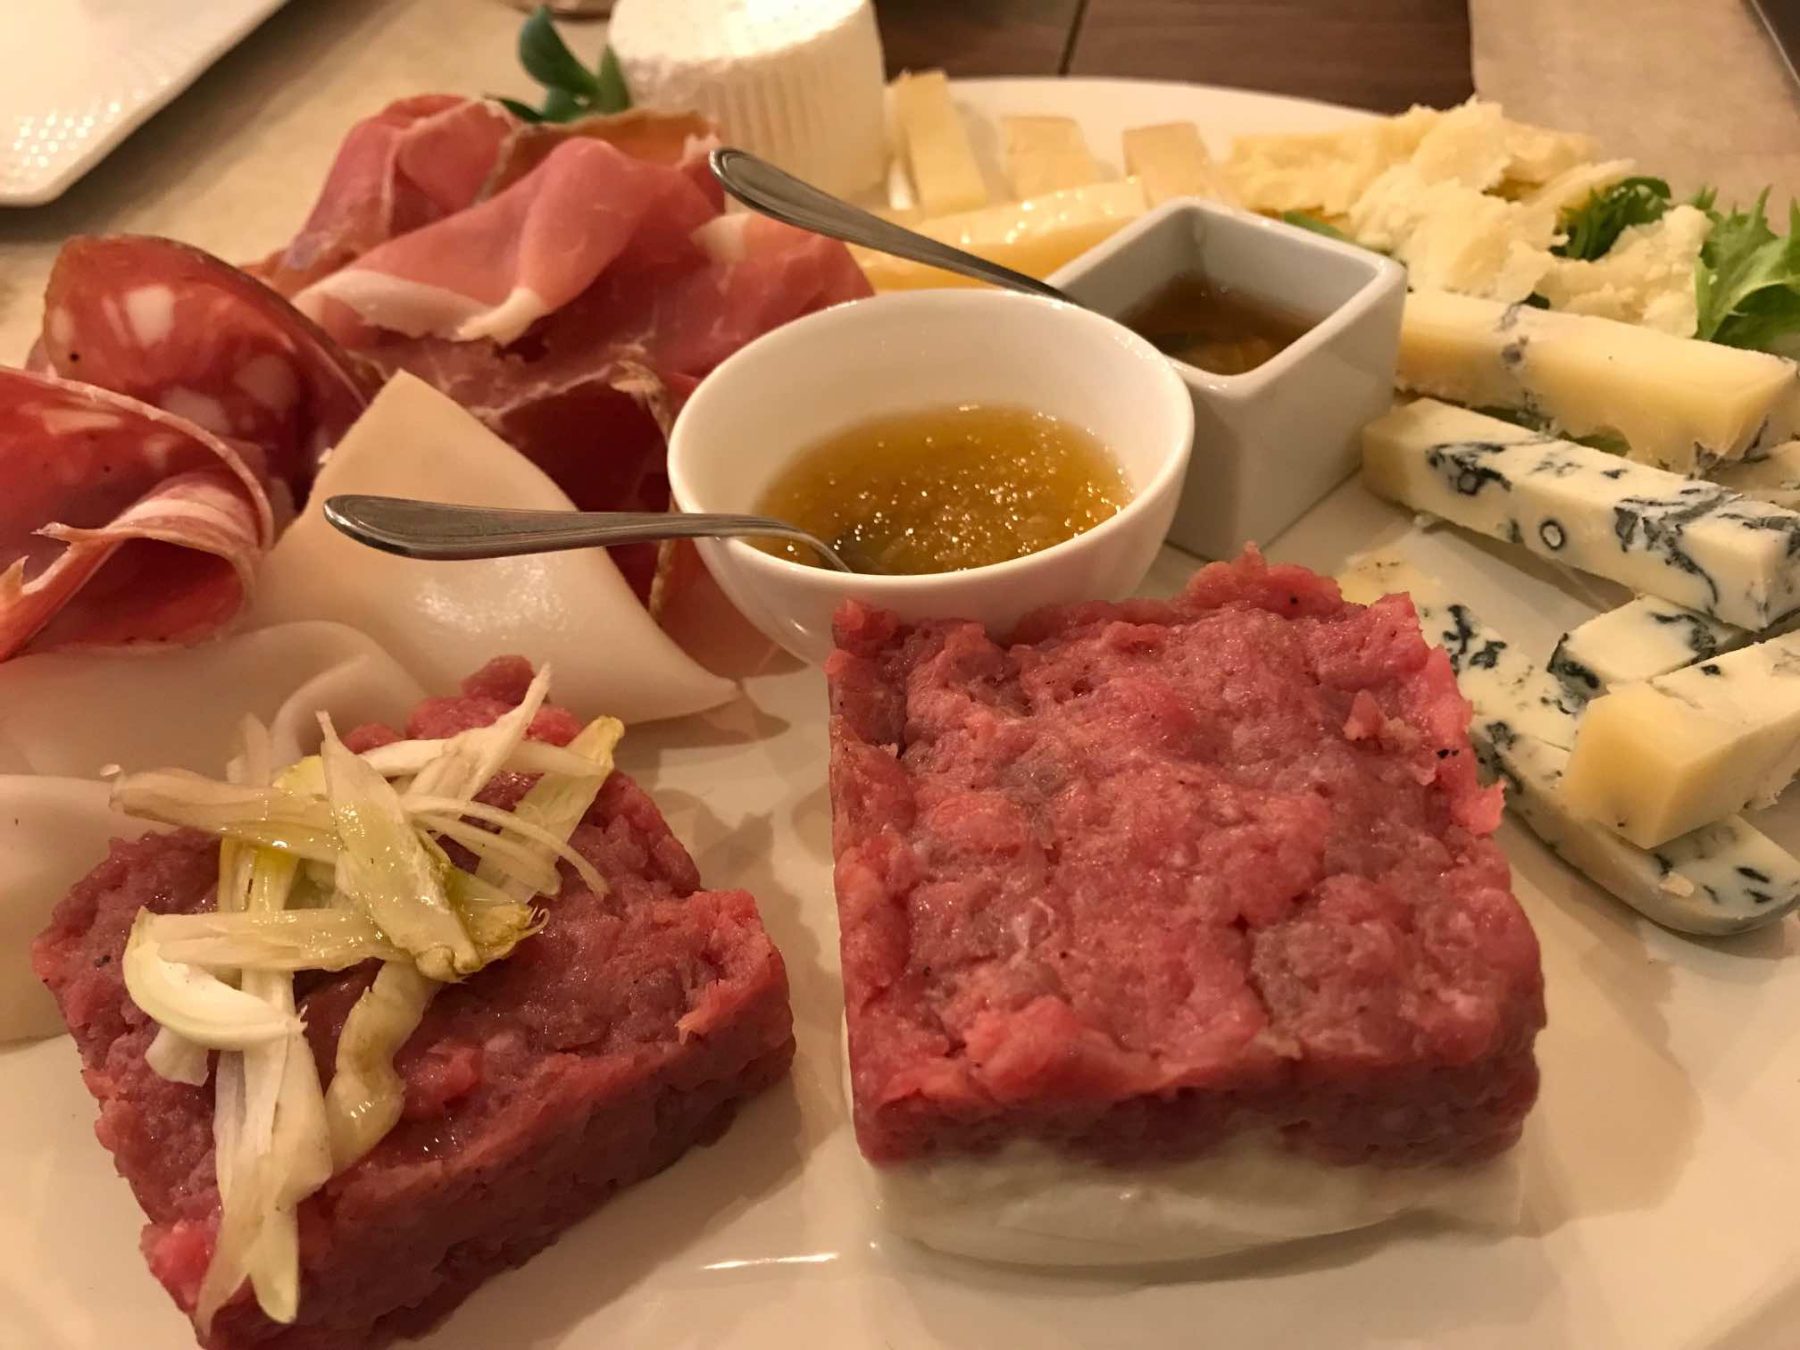 Il ristorante Adagio è un nuovo ristorante nel quartiere Sant'Ambrogio a Firenze che propone cucina italiana slow food nel rispetto delle tradizioni e dell'alta qualità dei prodotti.